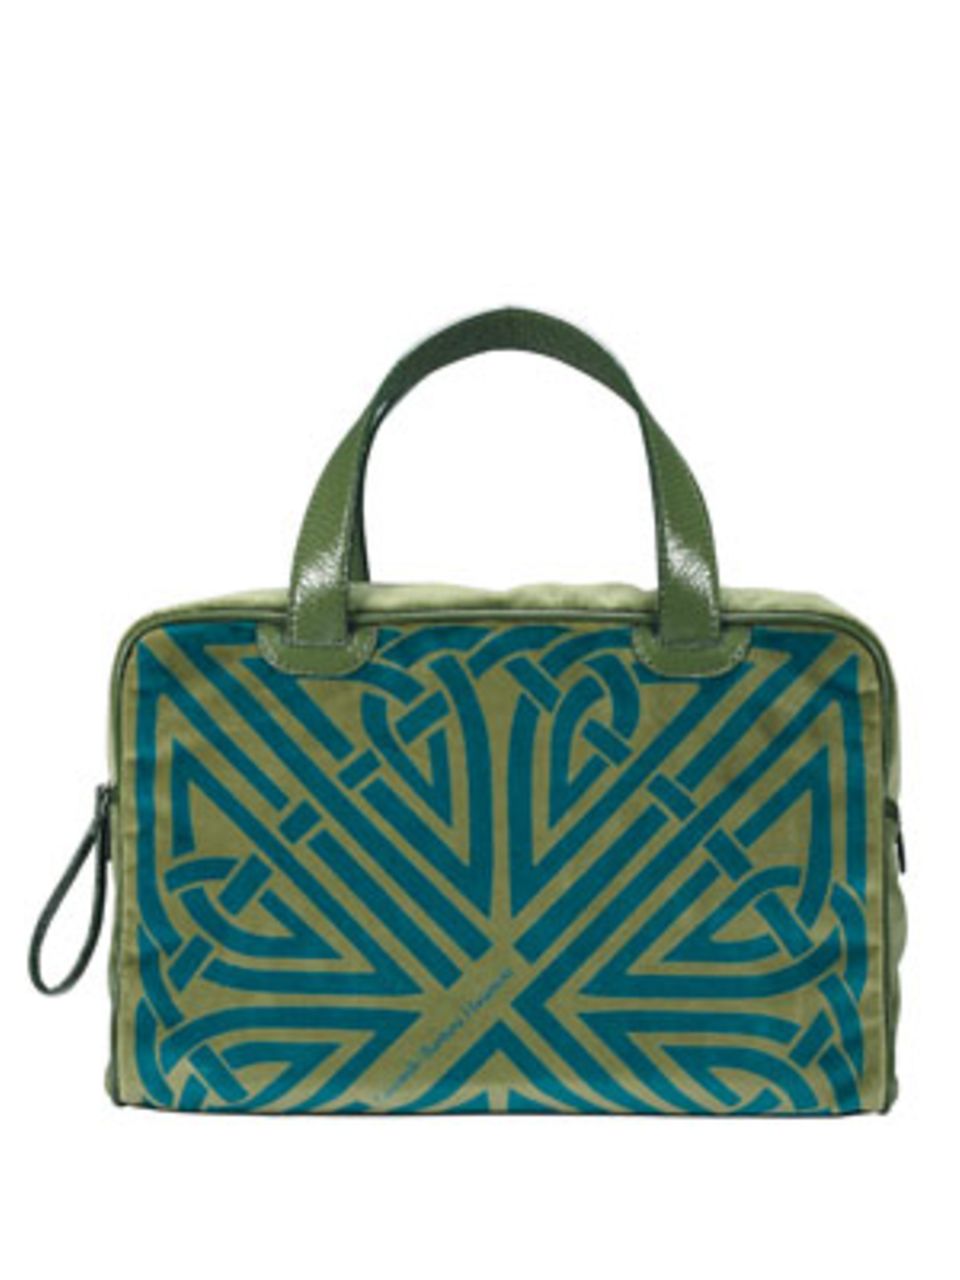 Dieser schöne grüne XL-Shopper entstand in Zusammenarbeit des renommierten Taschen-Labels Coccinelle mit der Designerin Barbara Hulanicki. Um 210 Euro.